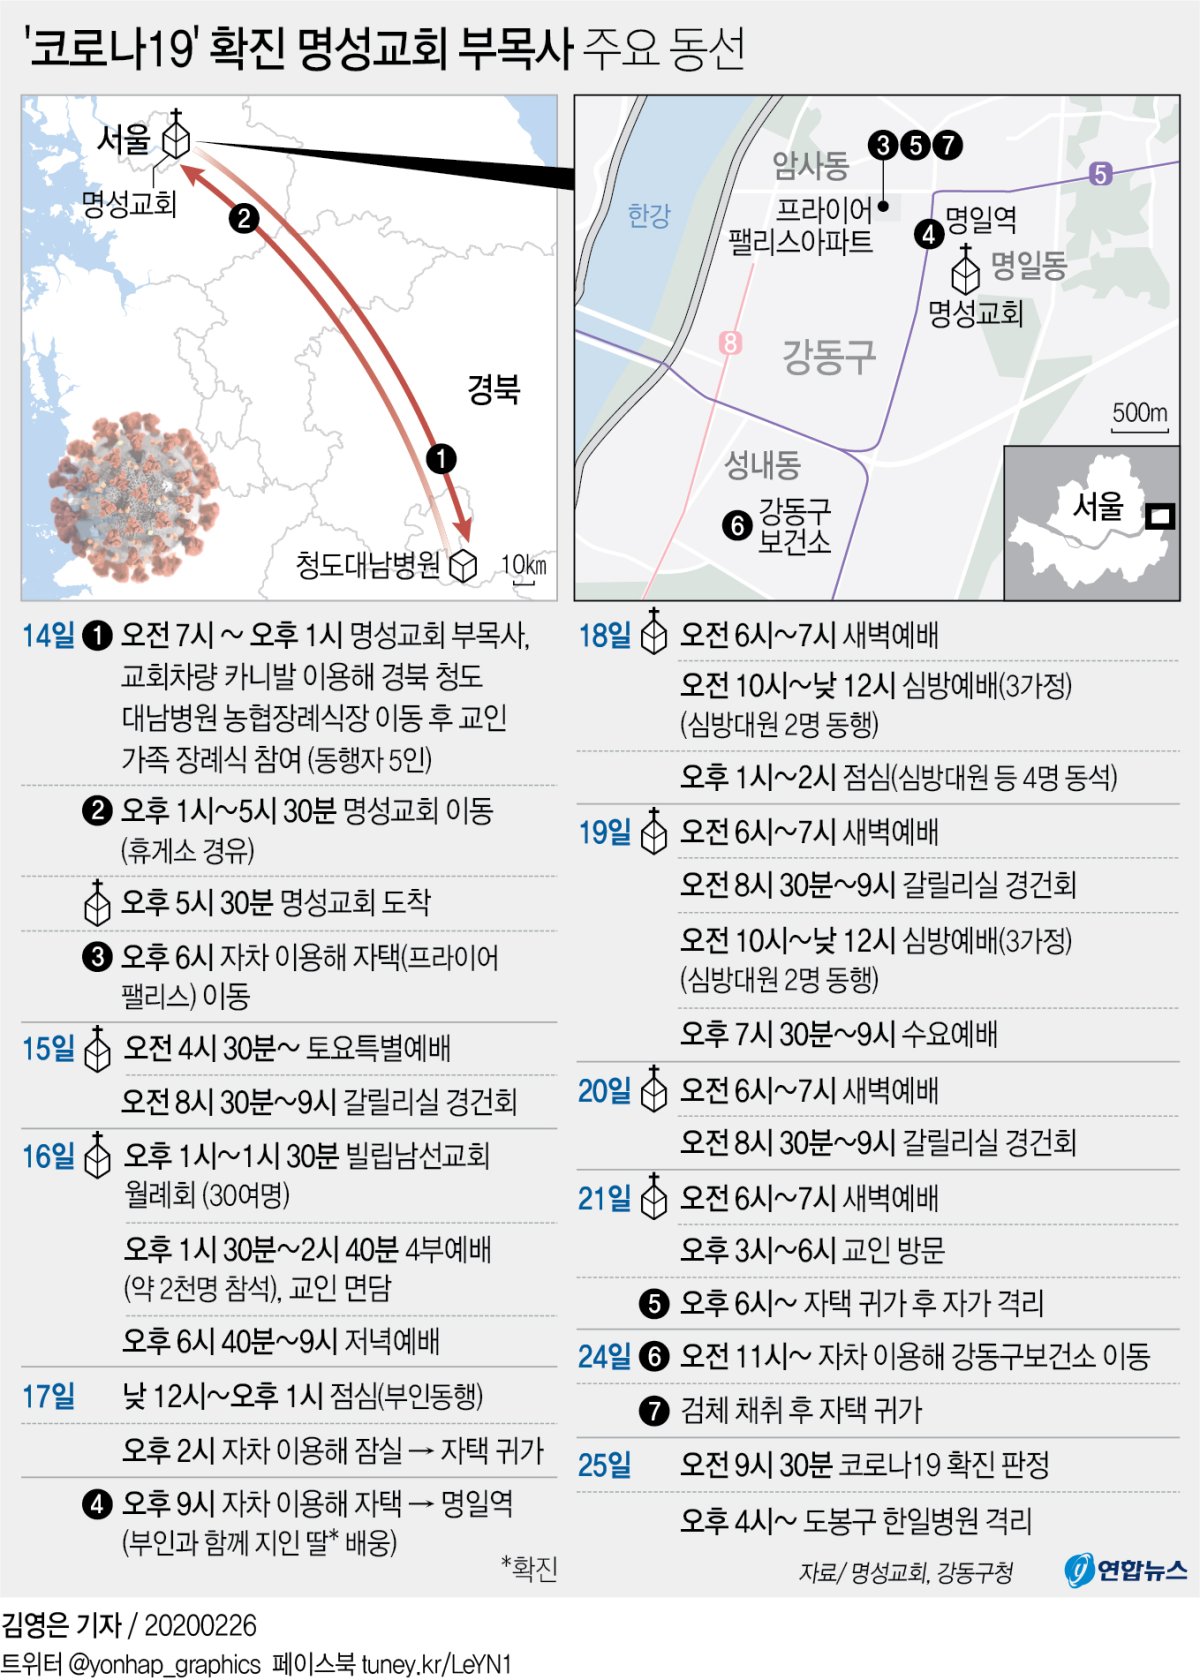 [그래픽] '코로나19' 확진 명성교회 부목사 주요 동선